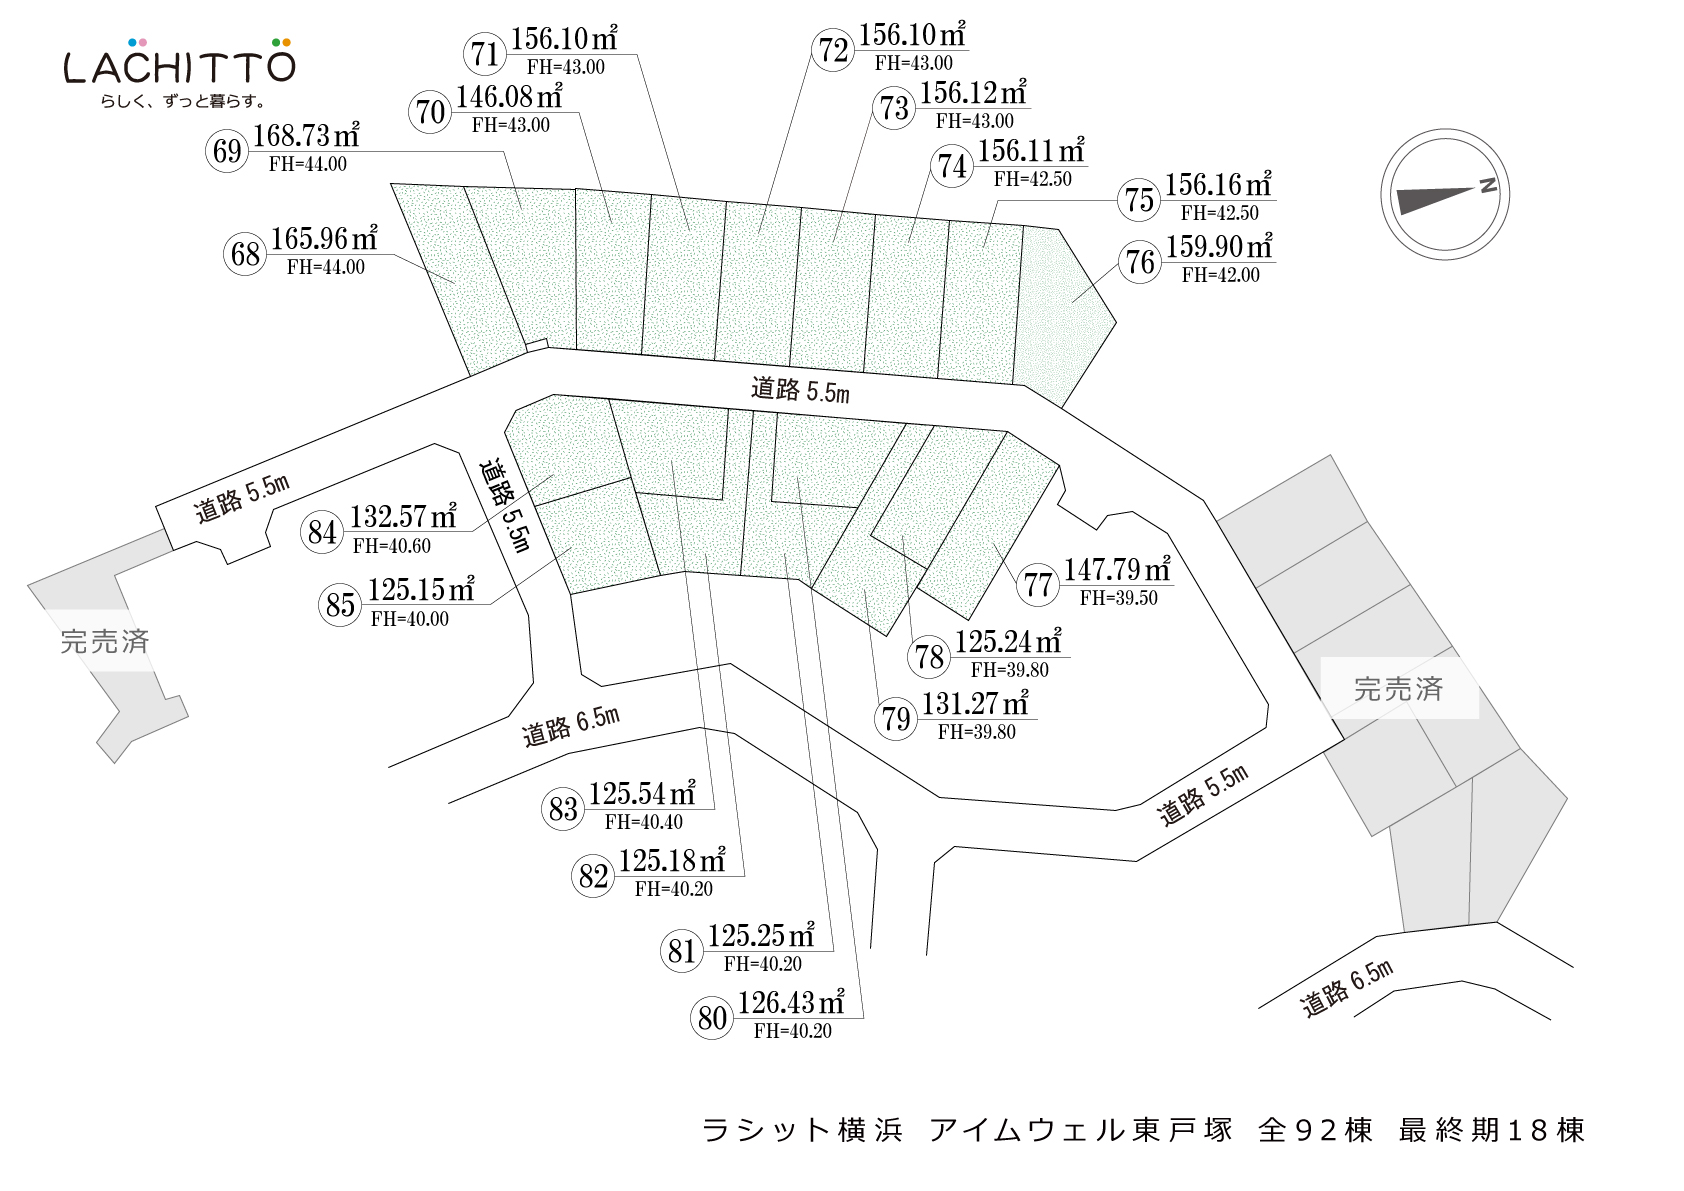 ラシット横浜 アイムウェル東戸塚 全92棟 最終期18棟 区画図